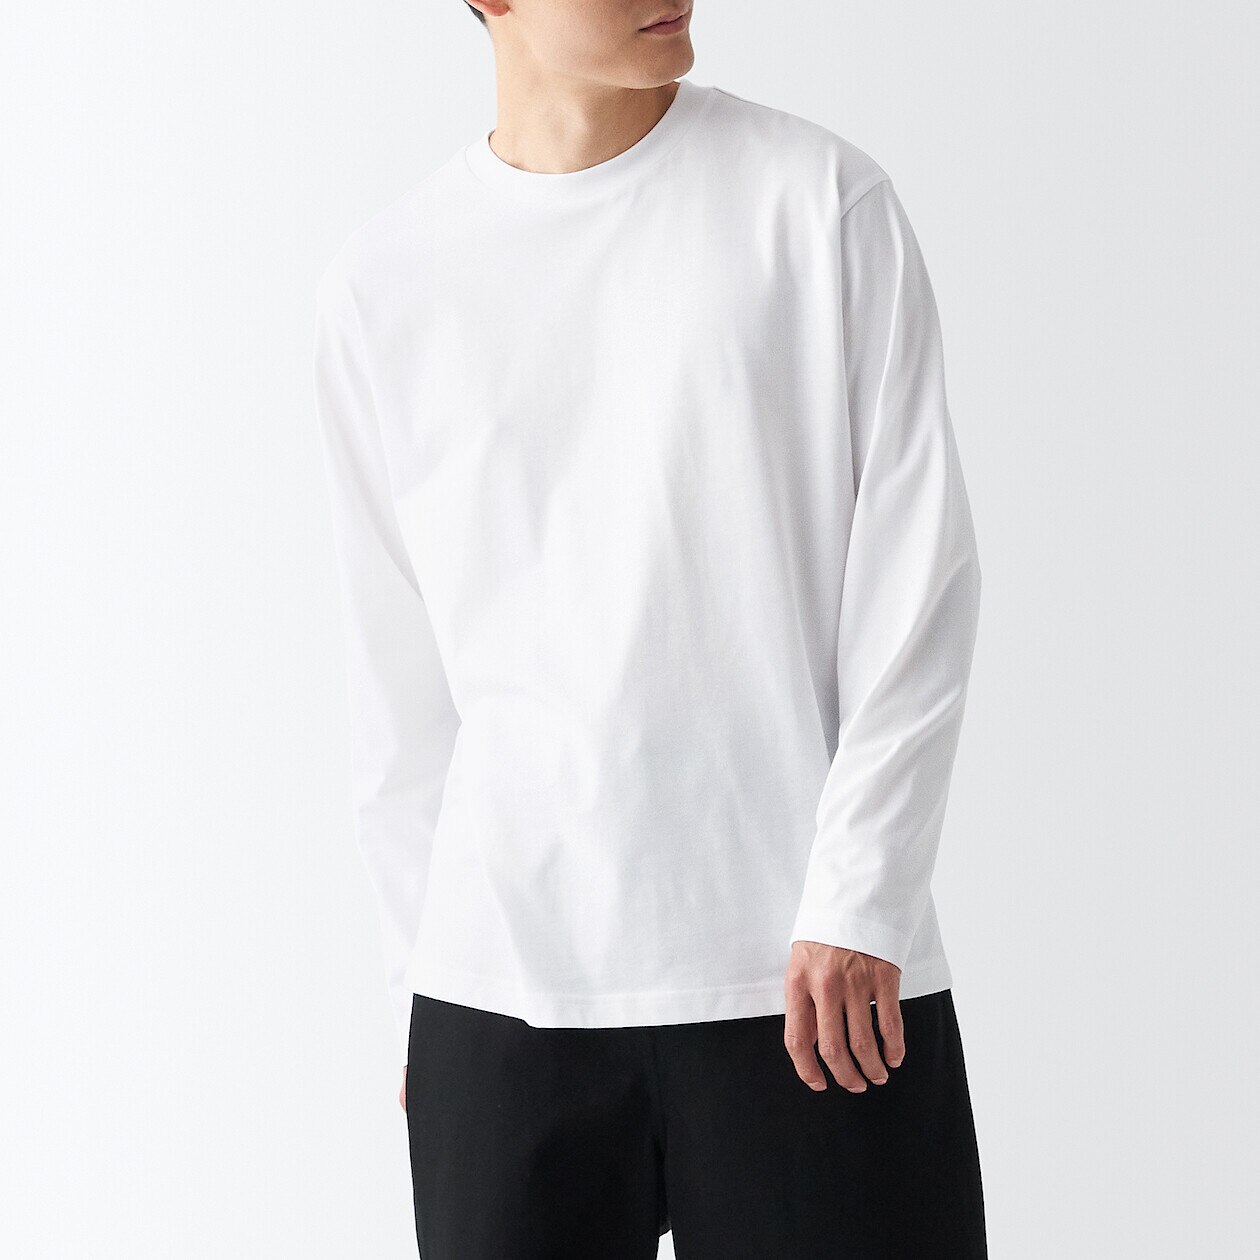 Shop Jersey Long Sleeve T-Shirt online | Muji UAE